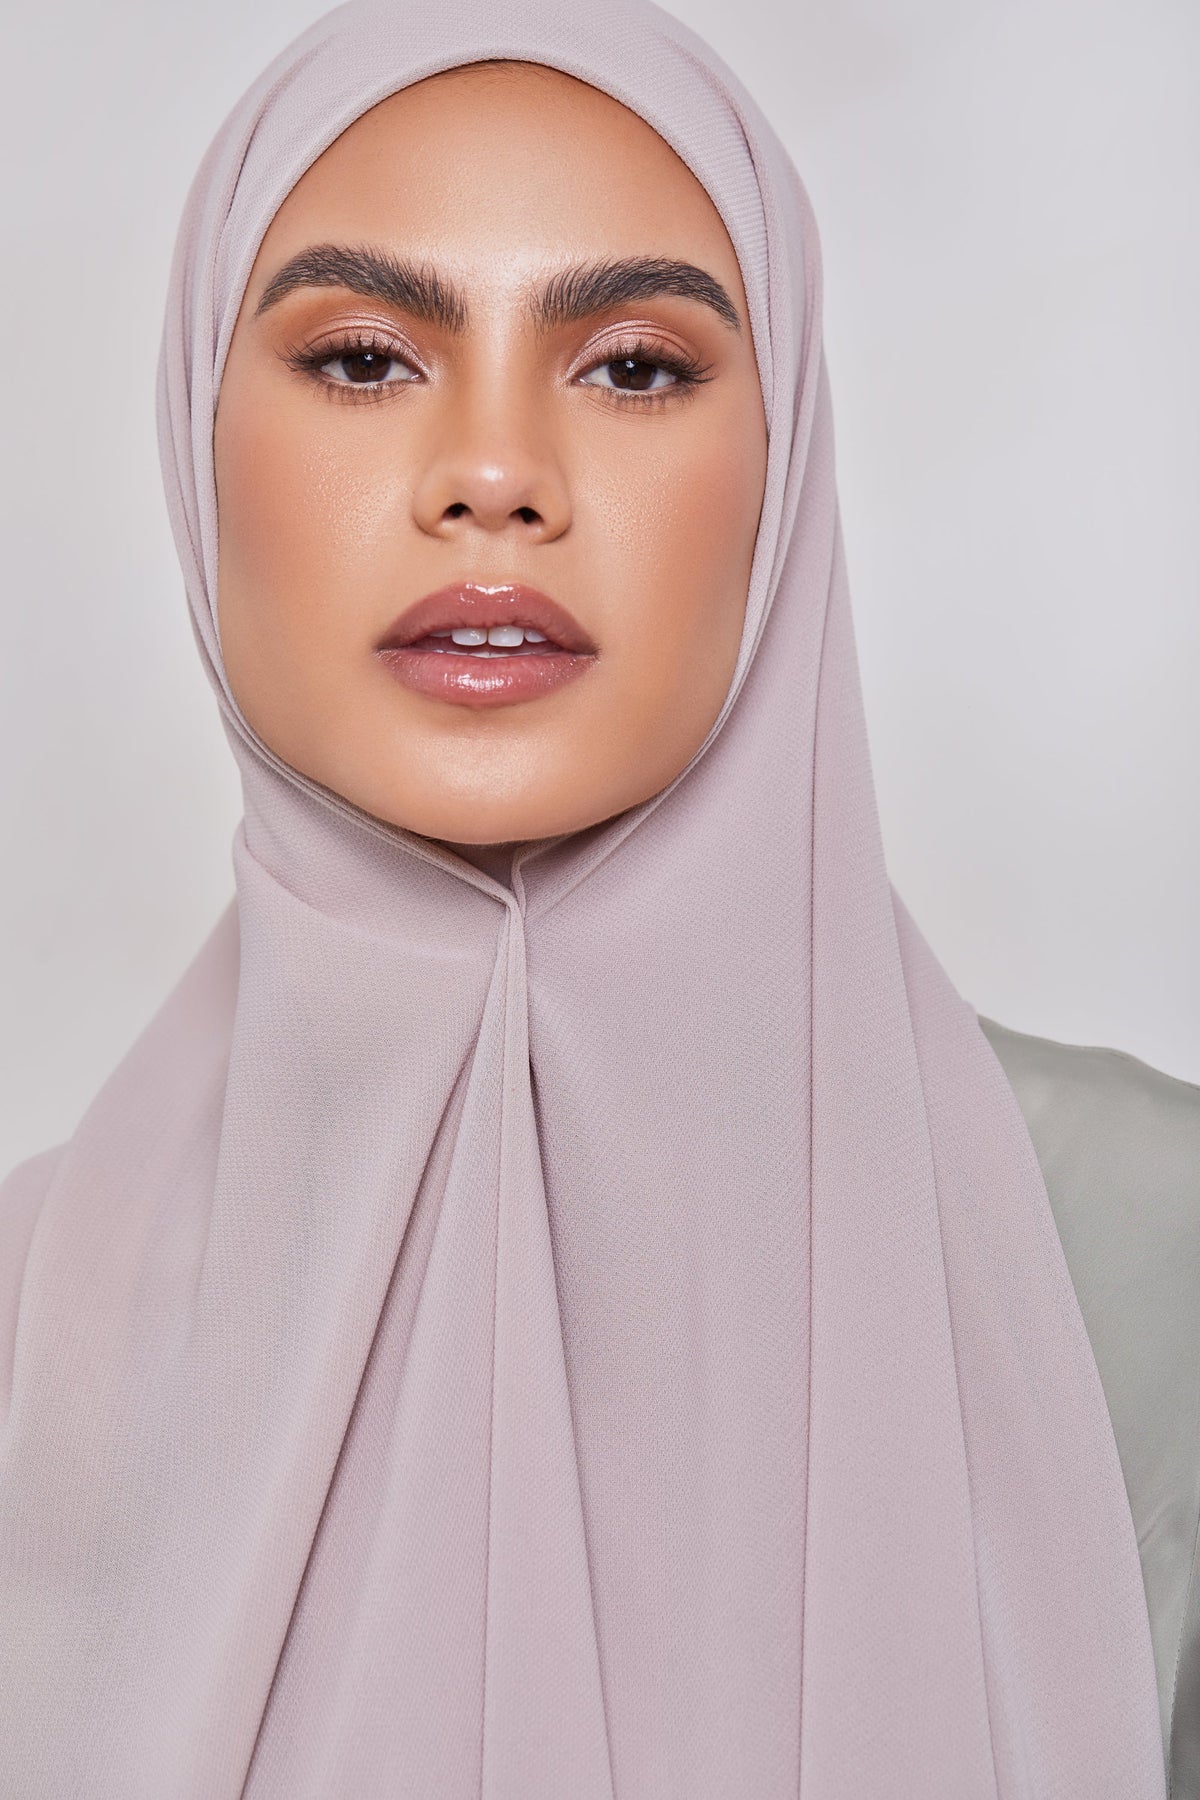 TEXTURE Twill Chiffon Hijab - Goals epschoolboard 